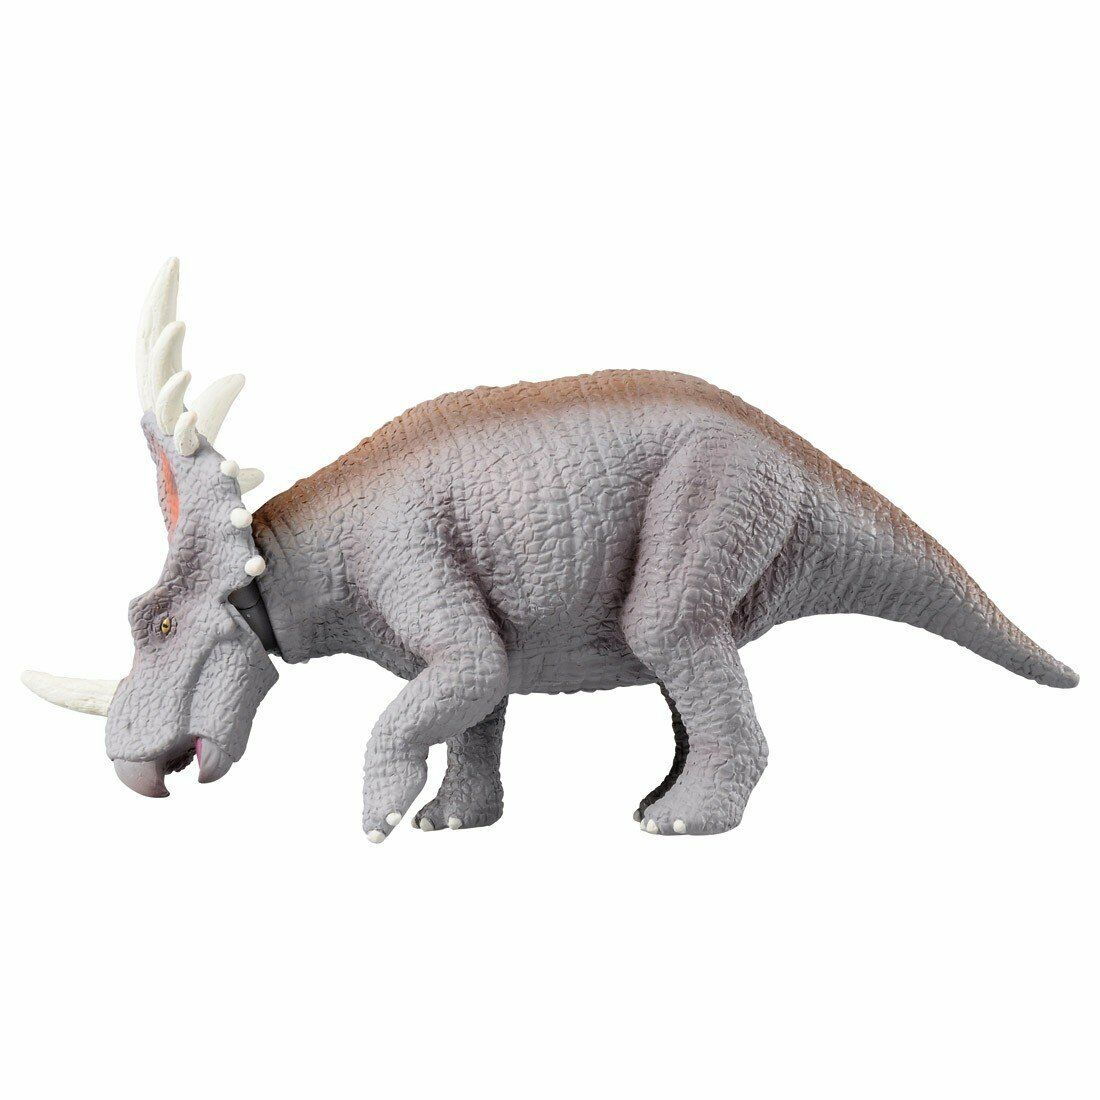 Takara Tomy ANIA Animal Advantage Figure AL-17 Styracosaurus Dinosaur Figure